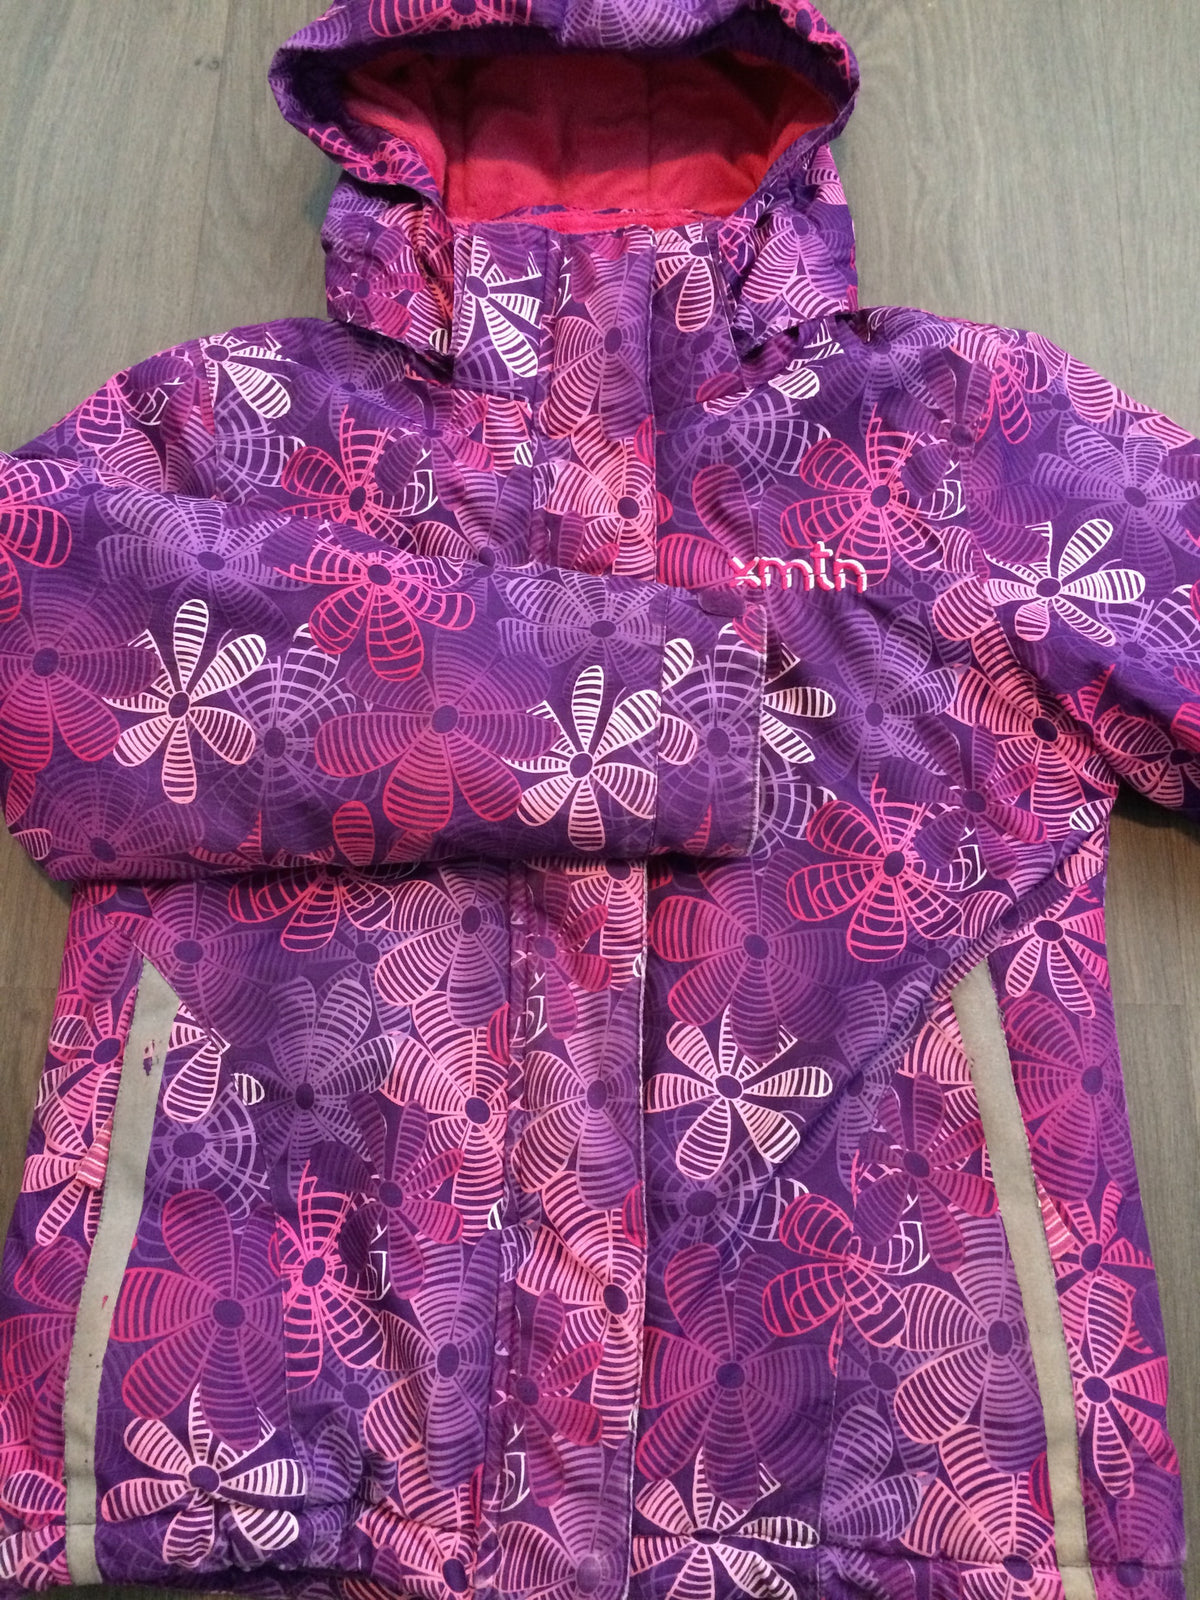 Full-Zip Hooded Winter Coat (Girls Size 10)